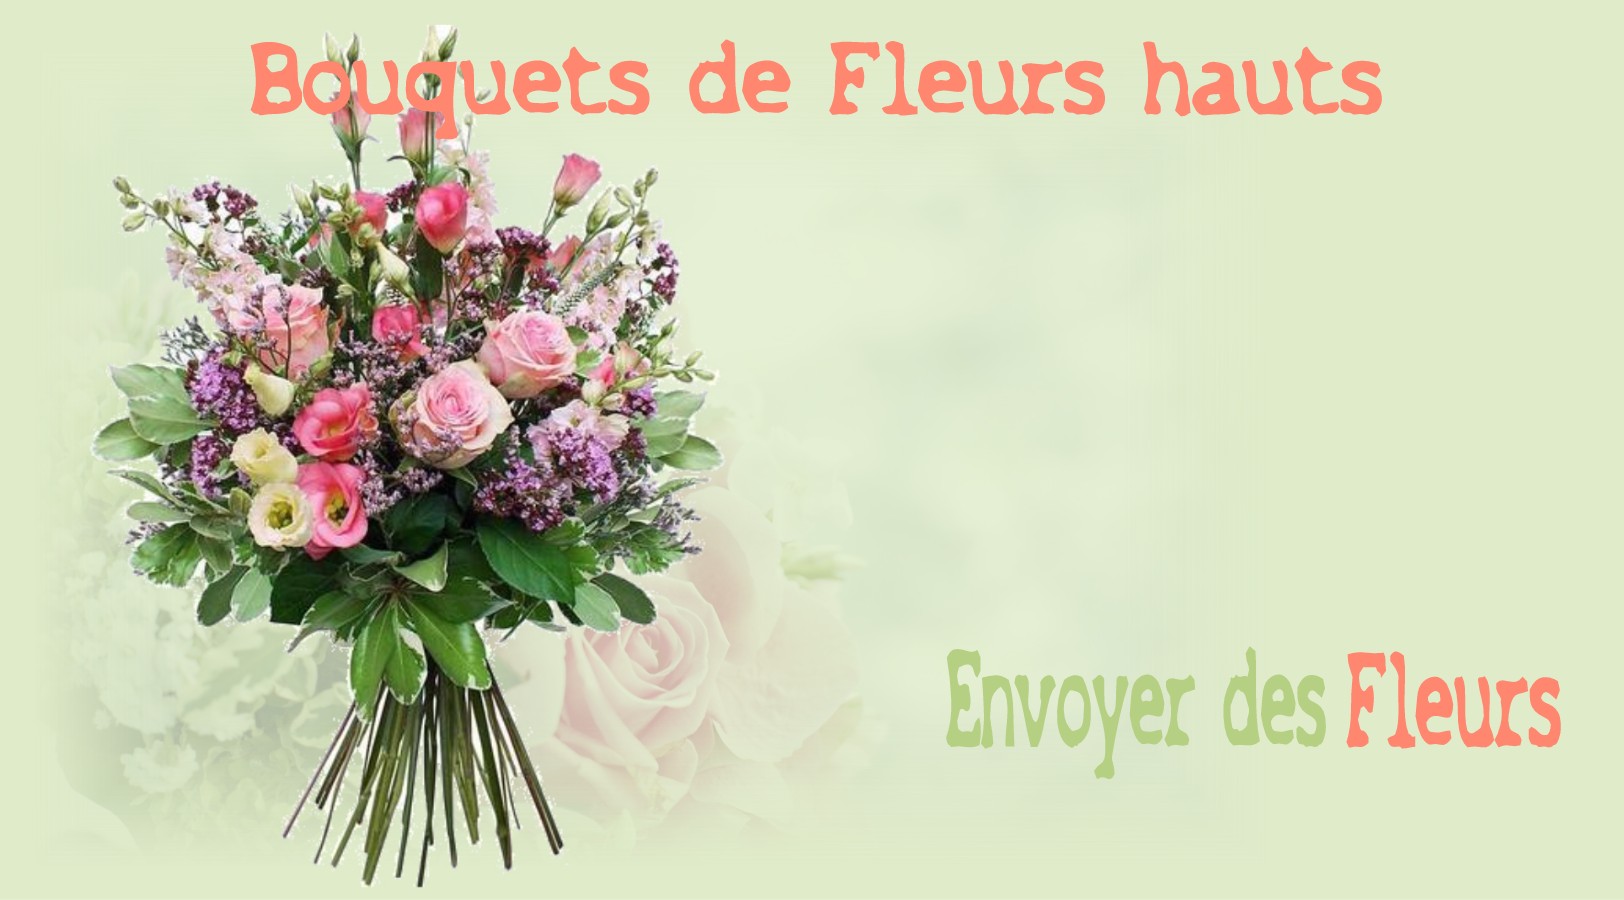 LES BOUQUETS HAUTS - FLEURISTE NANTES (44) - ENVOYER DES FLEURS